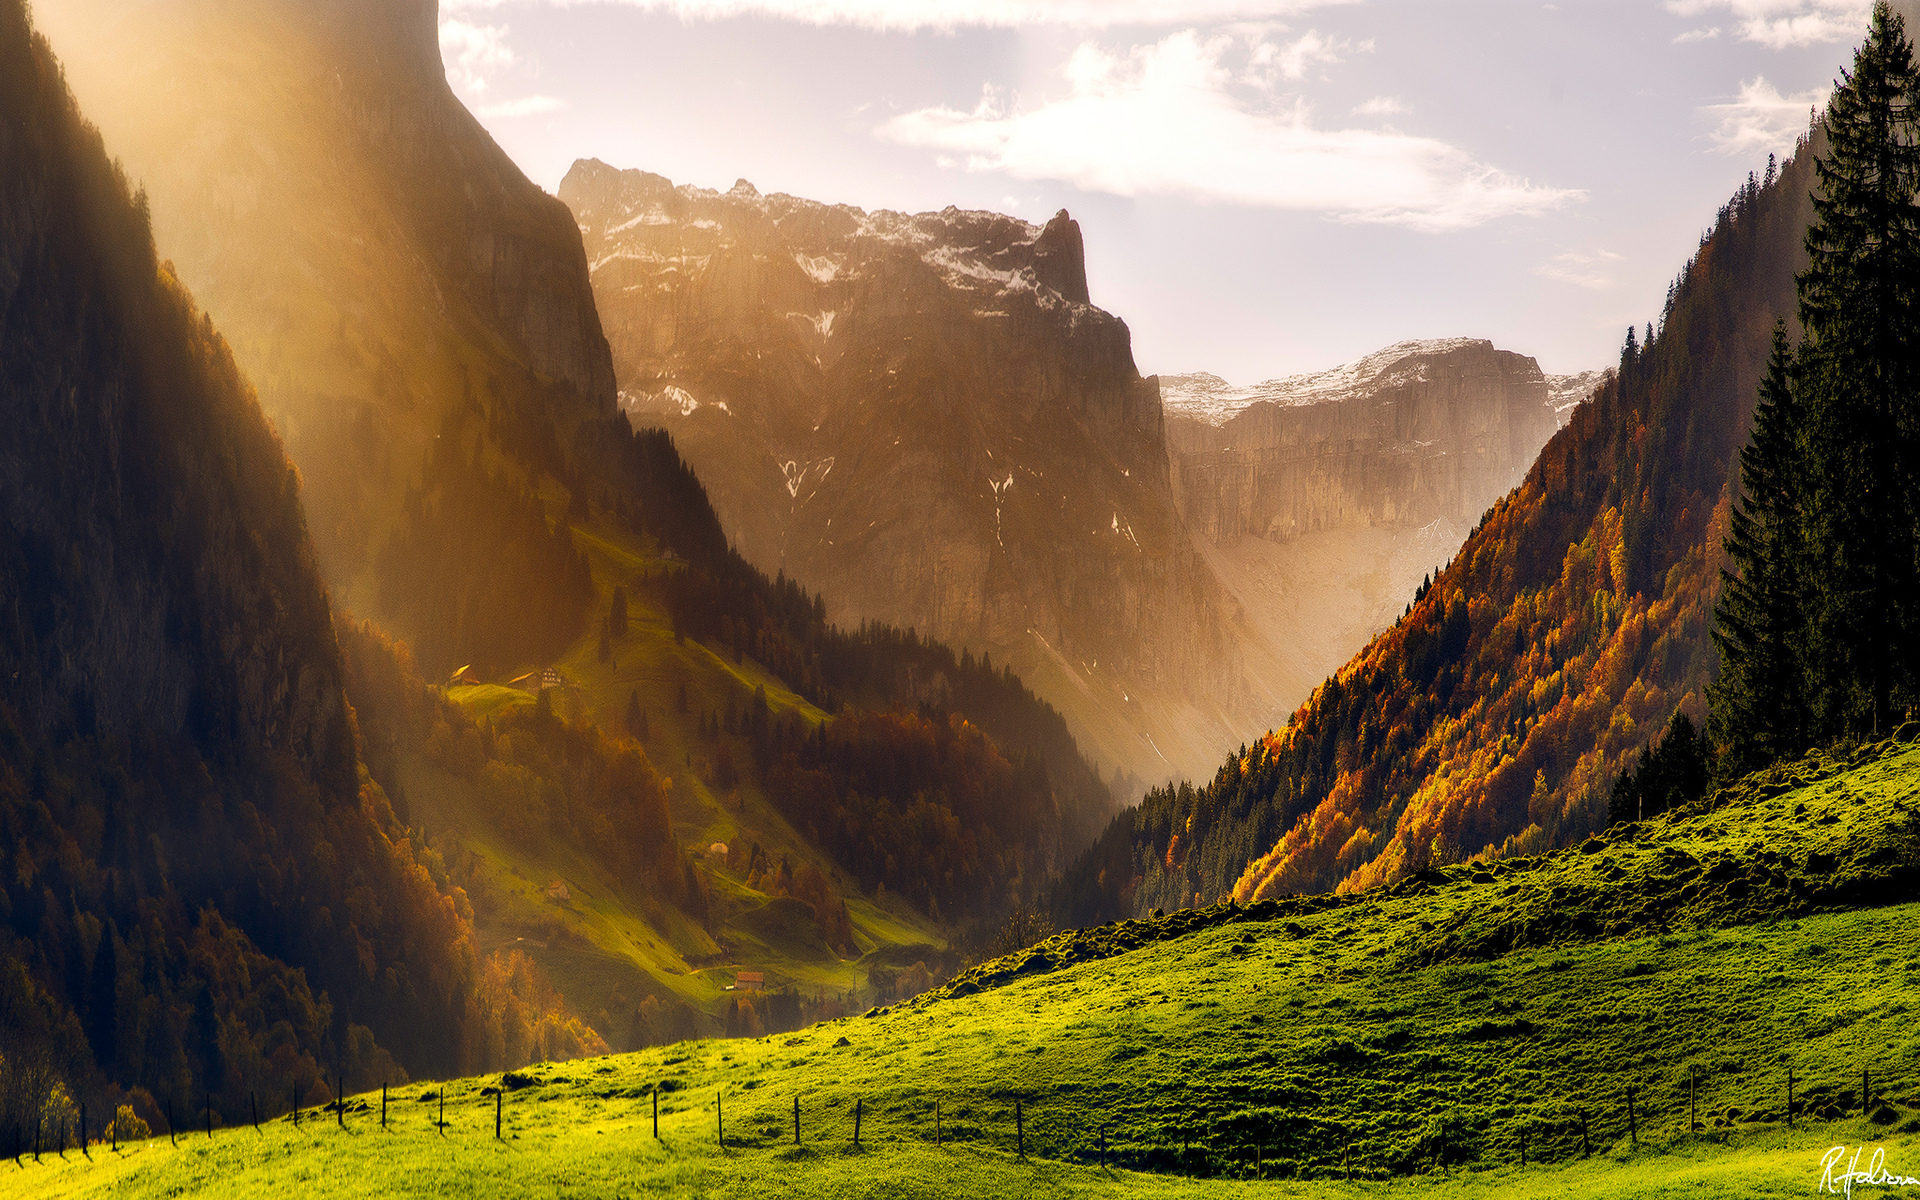 Aльпы горы лес Швейцария